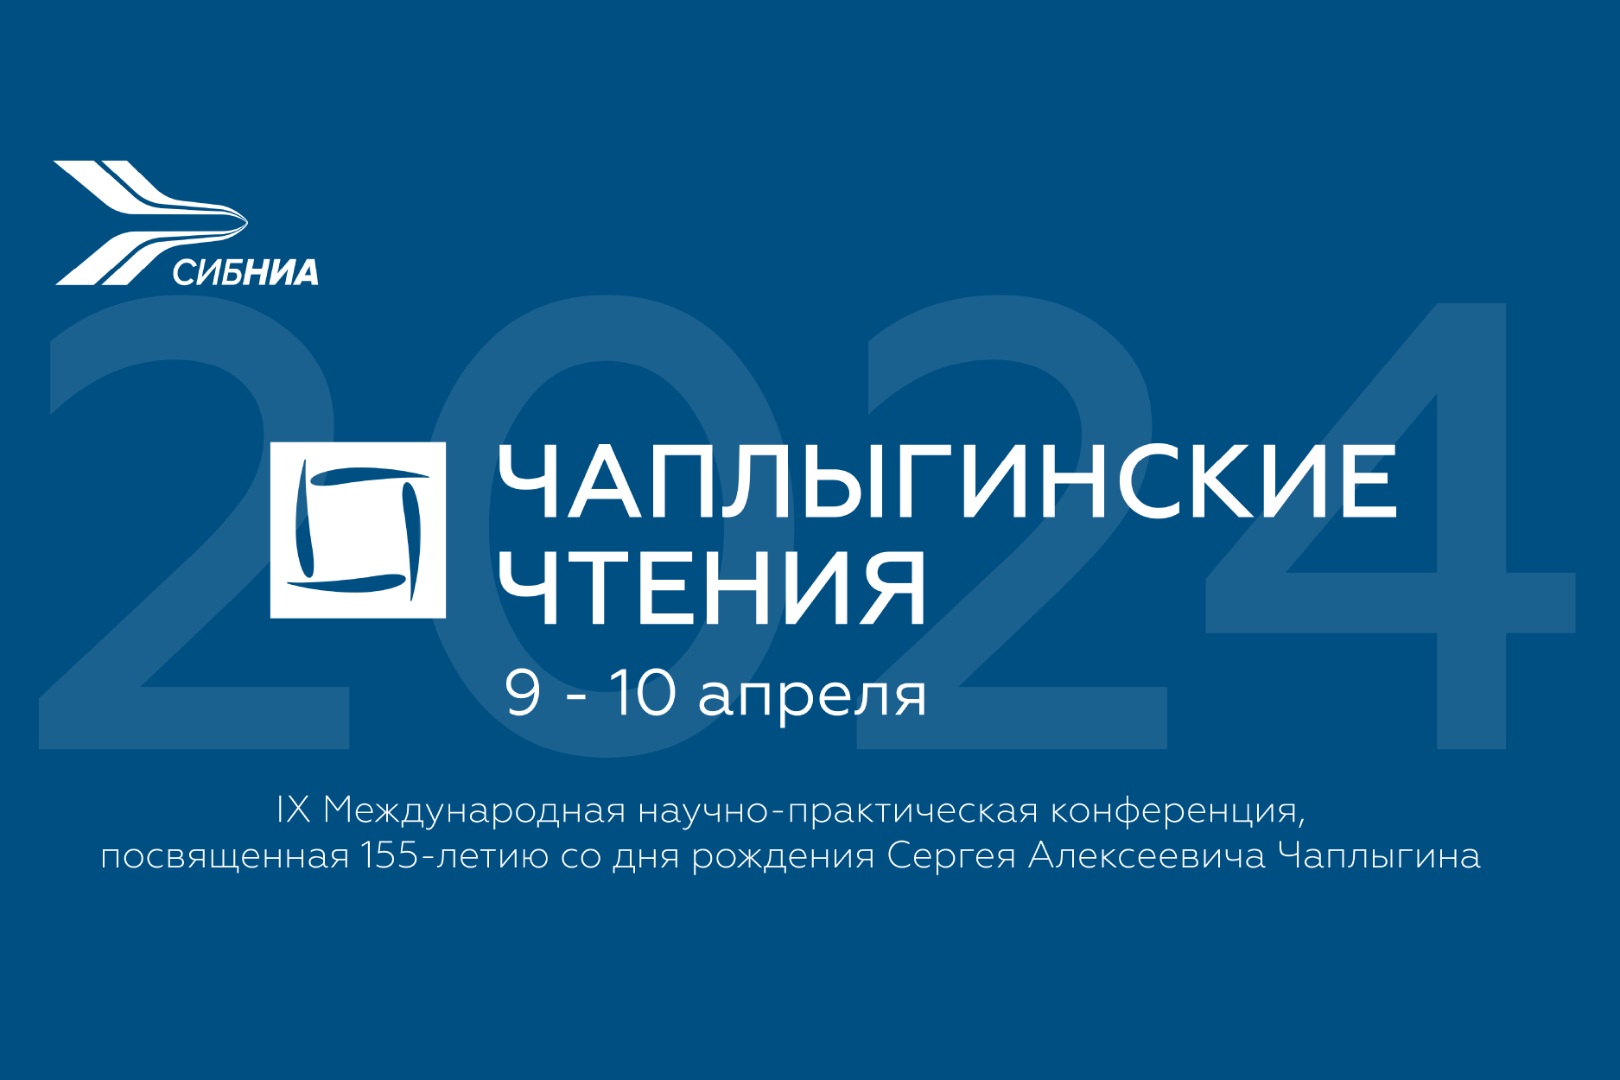 В СибНИА состоялась IX Международная научно-практическая конференция «Чаплыгинские чтения»